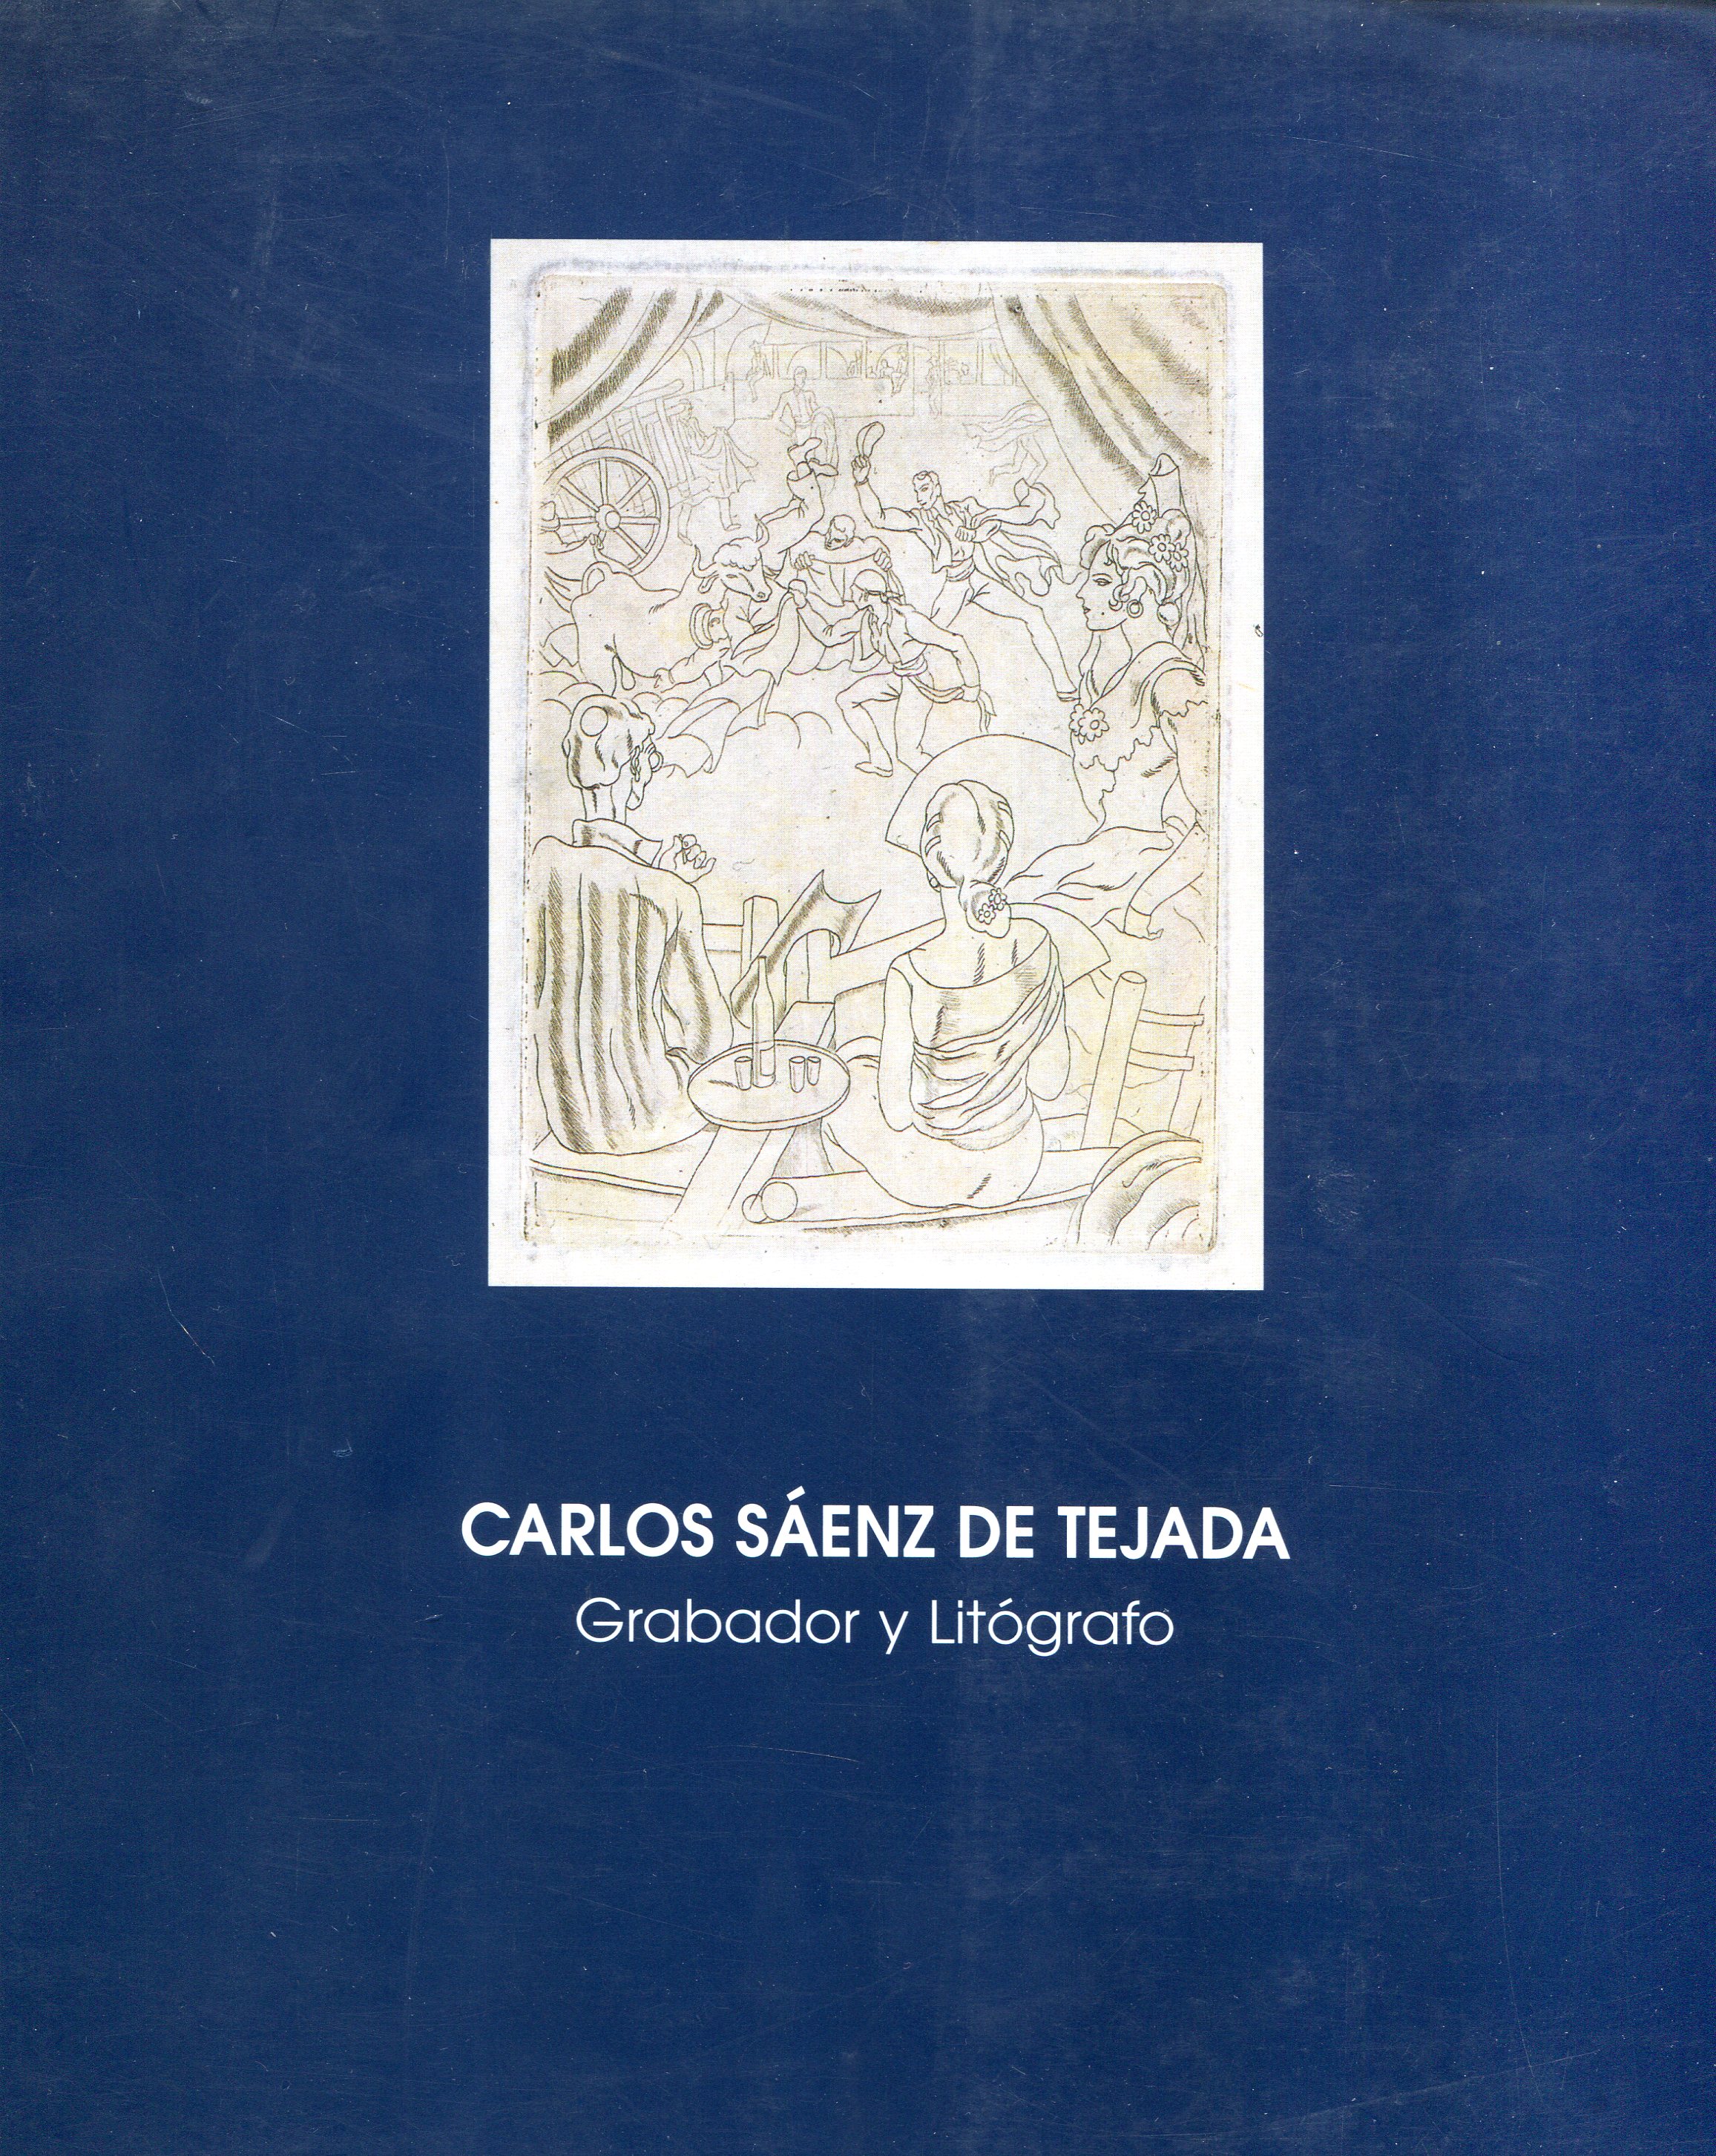 Carlos Sáenz de Tejada